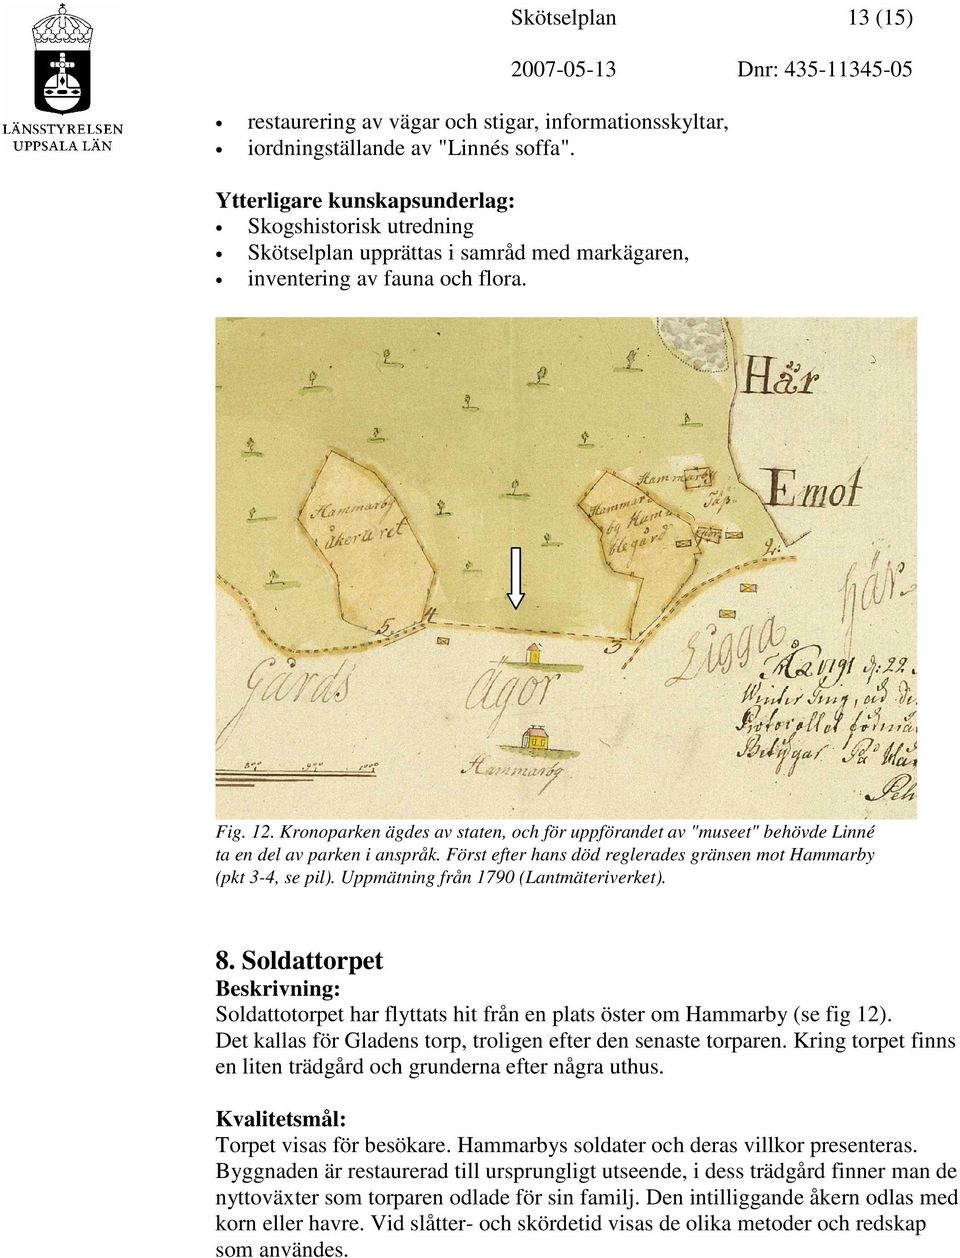 Kronoparken ägdes av staten, och för uppförandet av "museet" behövde Linné ta en del av parken i anspråk. Först efter hans död reglerades gränsen mot Hammarby (pkt 3-4, se pil).